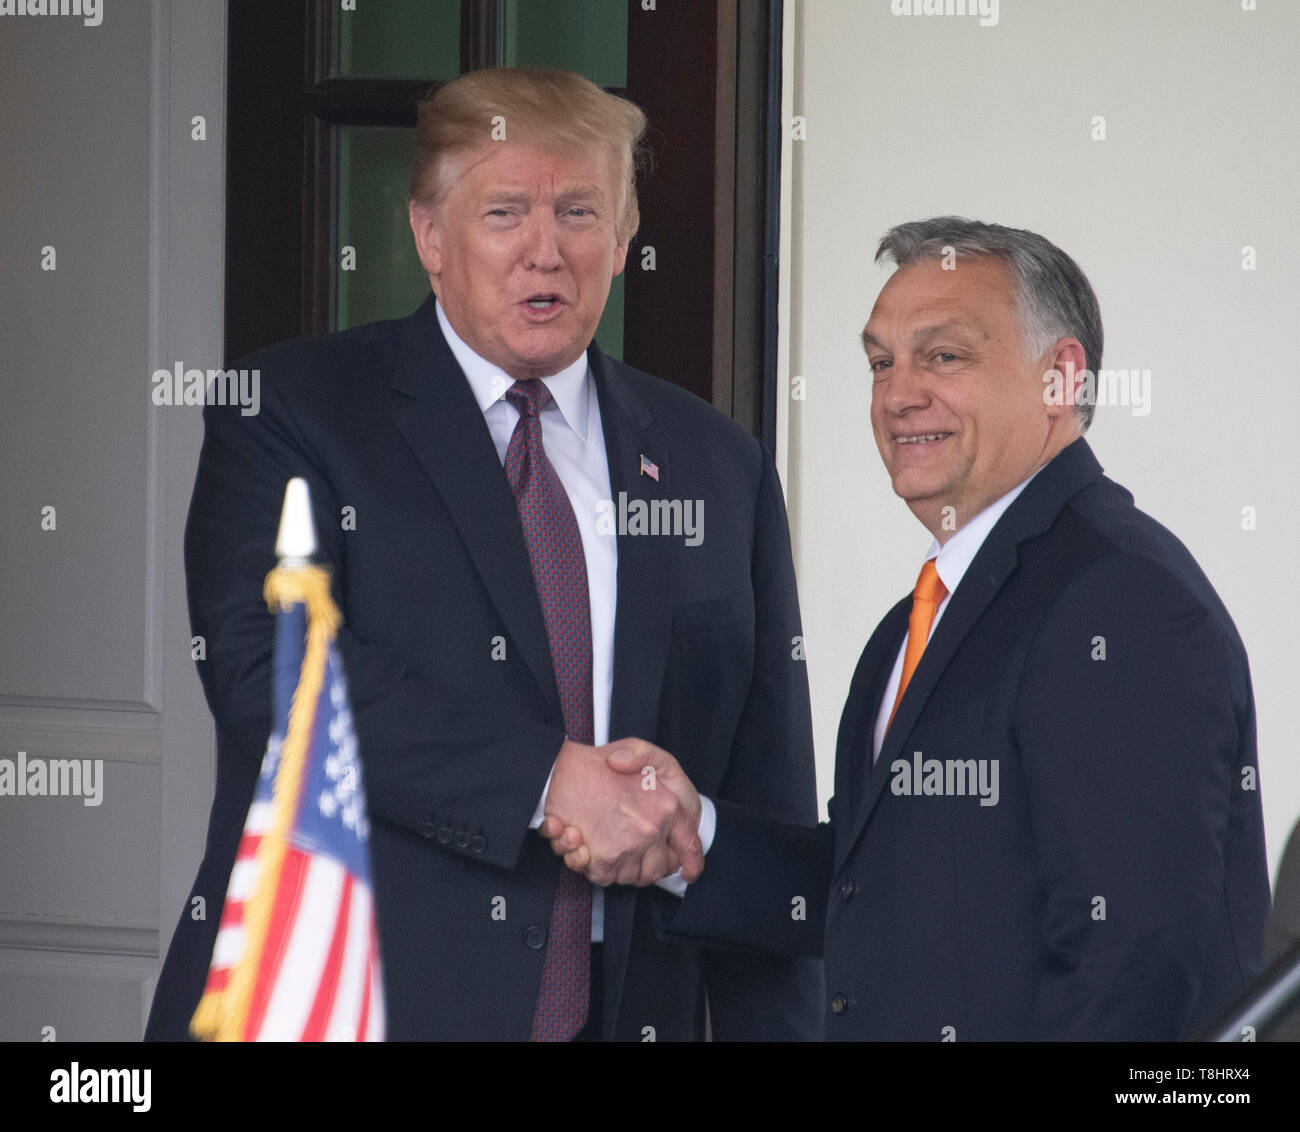 Präsidenten der Vereinigten Staaten Donald J. Trumpf, Links, schüttelt Hände mit Ministerpräsident Viktor Orban in Ungarn, rechts, als er ihn begrüßt zum Weißen Haus in Washington, DC am Montag, 13. Mai 2019. Die beiden Führer wird für etwa eine Stunde treffen. Credit: Ron Sachs/CNP/MediaPunch Stockfoto